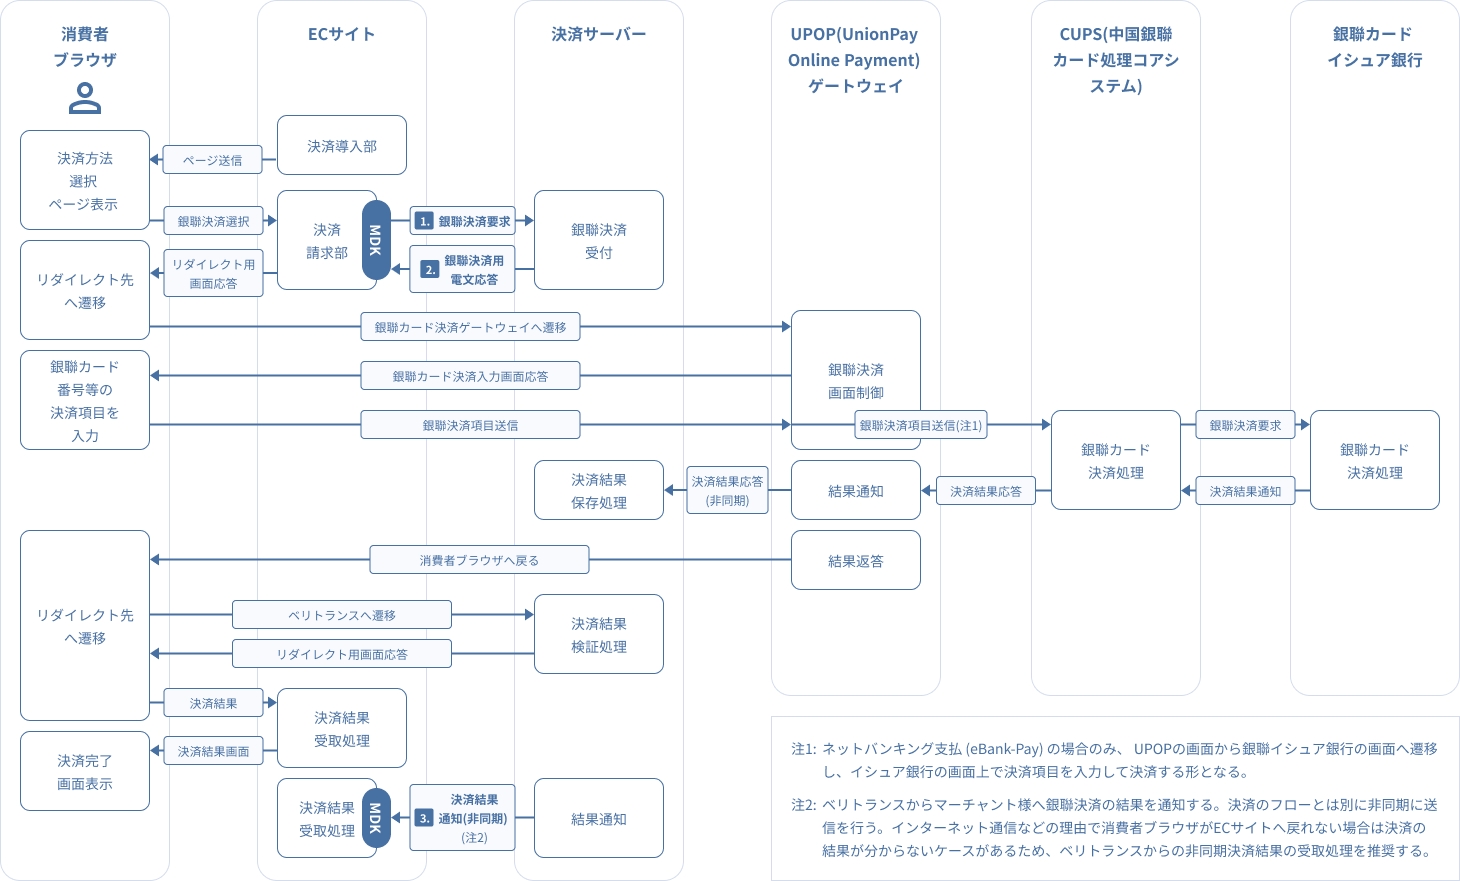 図 2-5-1銀聯ネット決済（UPOP）